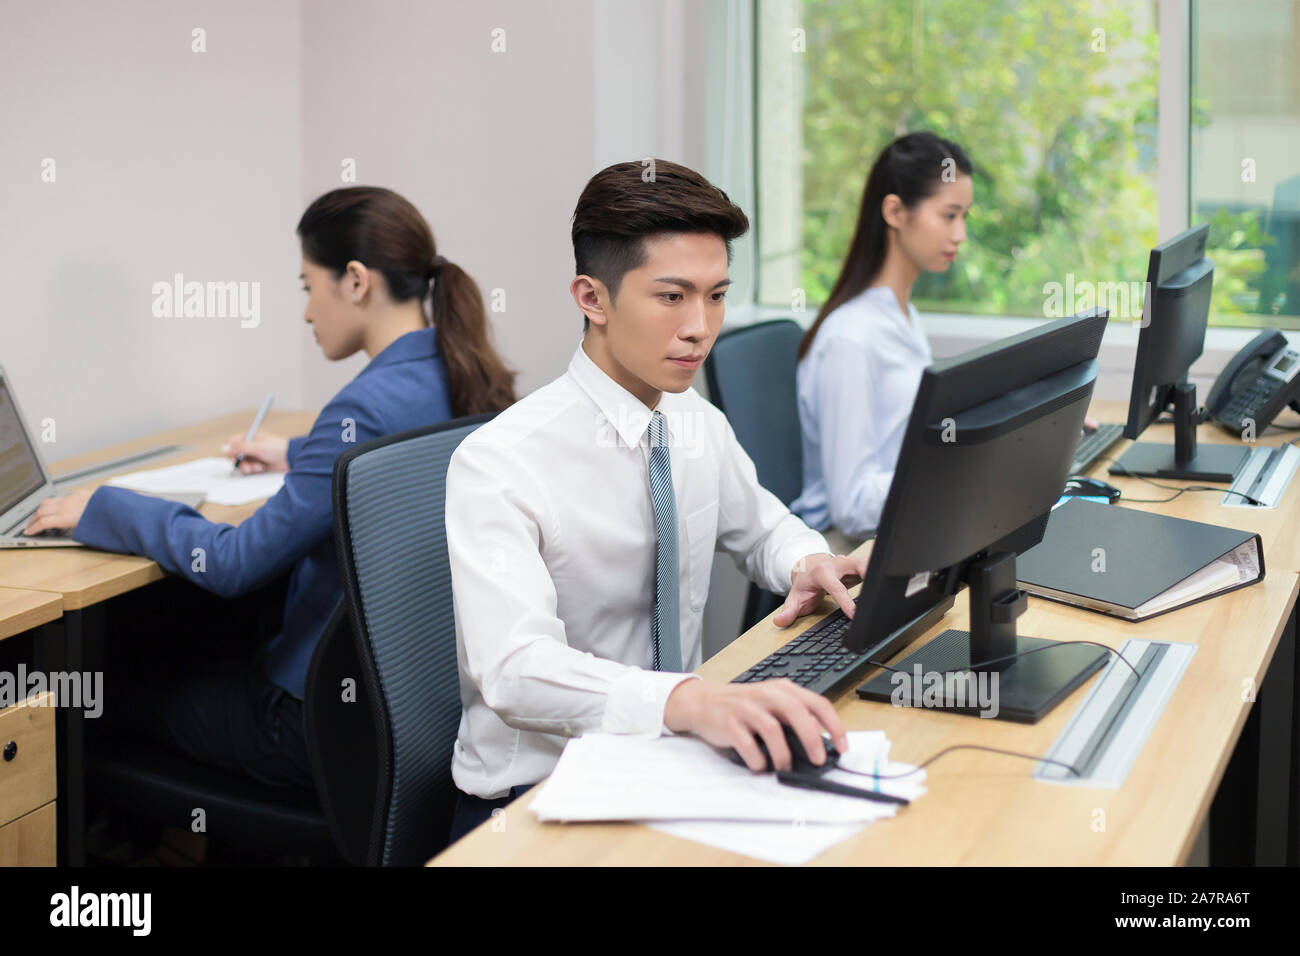 Fotografía de tres empresarios jóvenes, hombres y mujeres que trabajan en una oficina con dos usando computadoras y otra utilización portátil Foto de stock